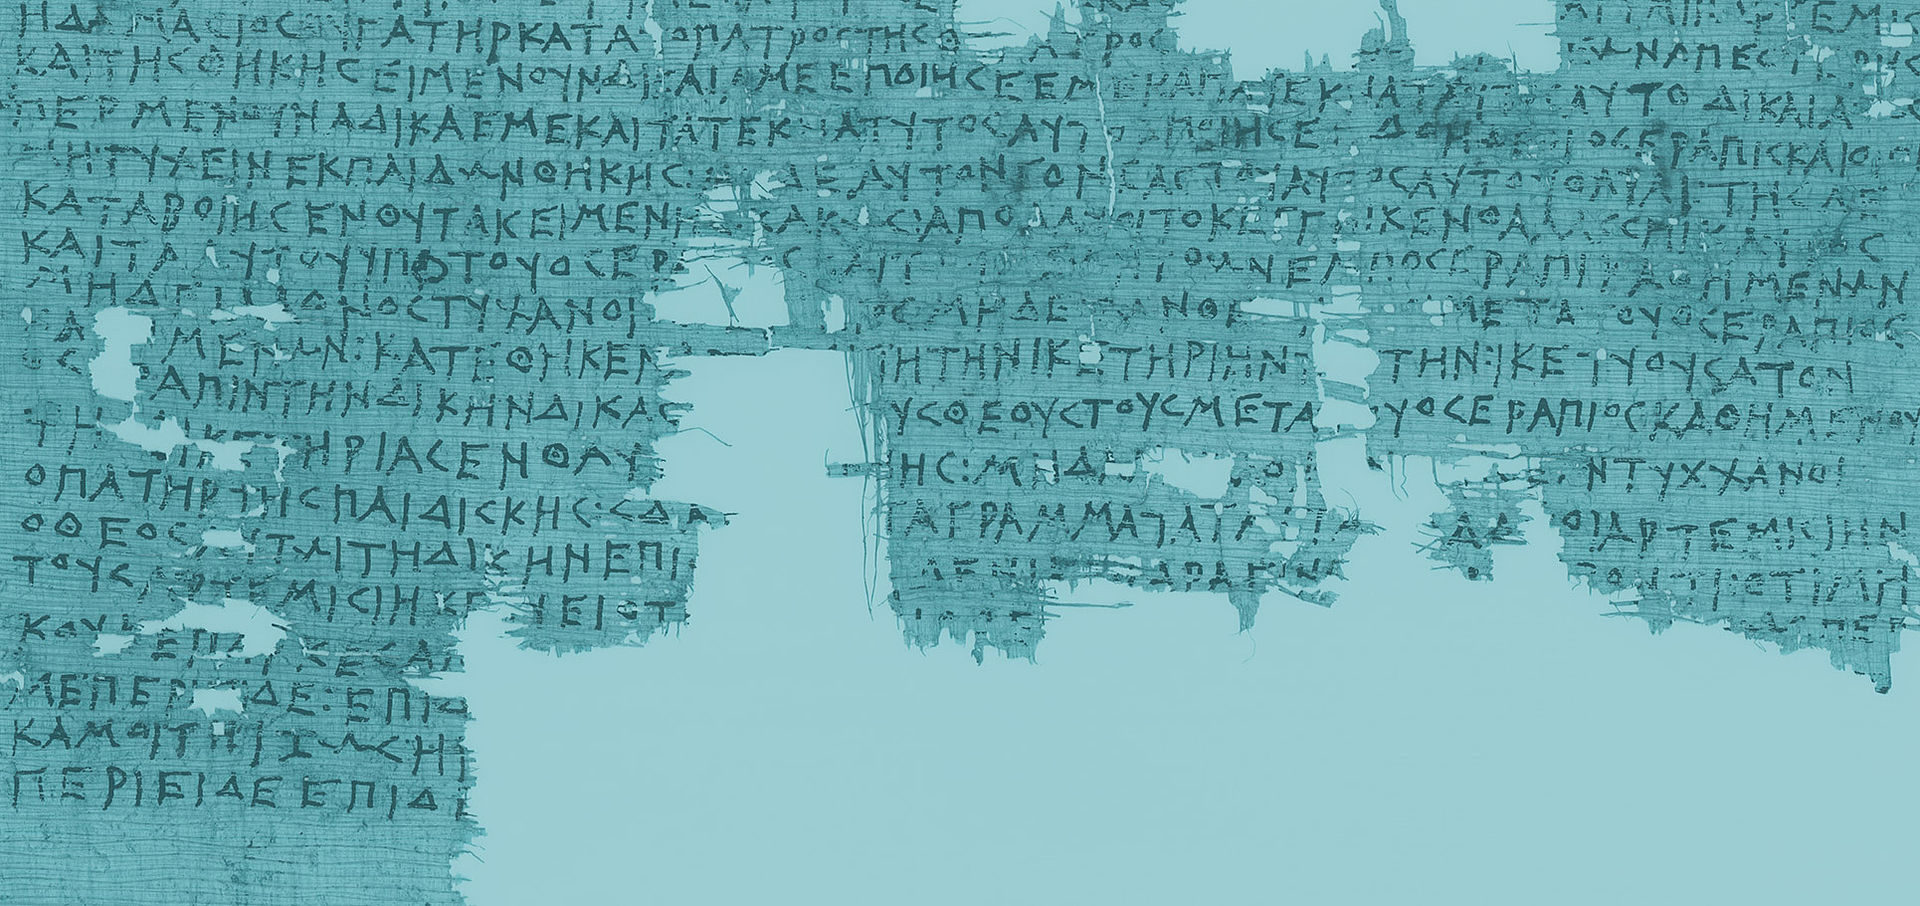 Türkis eingefärbter Scan von einem löchrigen Papyrus